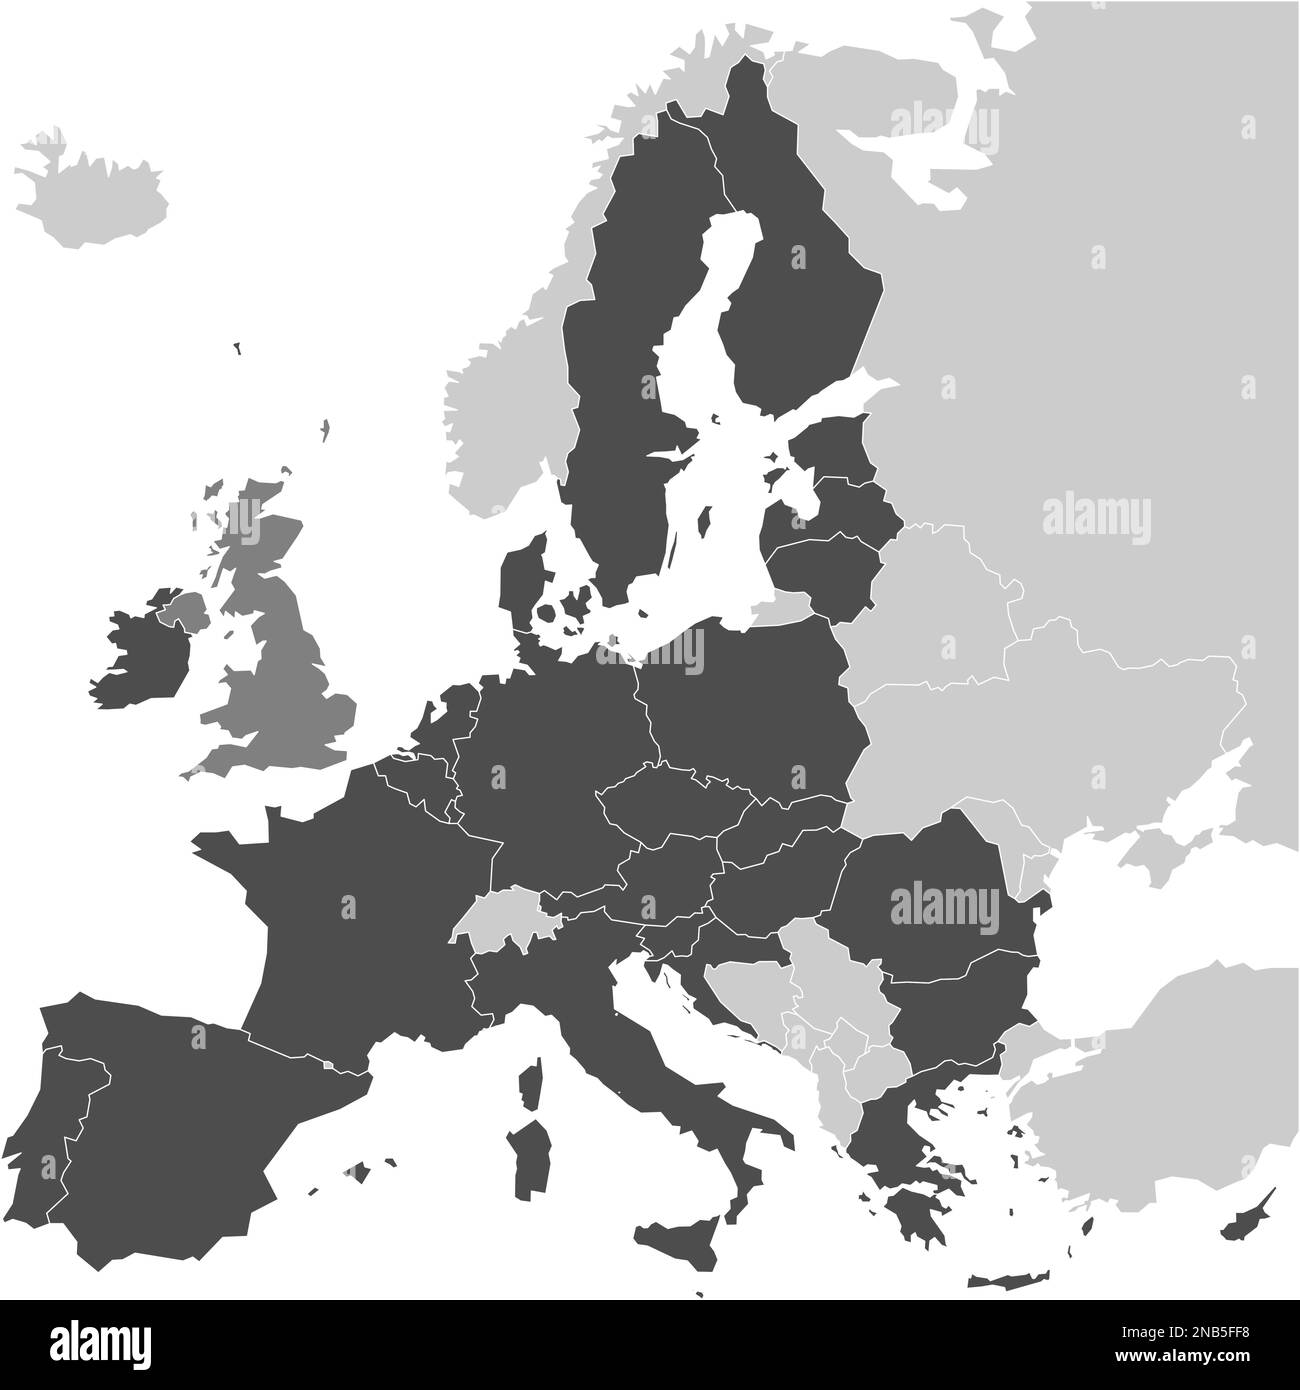 Carte de l'Europe avec Etats membres de l'UE gris foncé et Royaume-Uni de différentes couleurs. Illustration vectorielle. Carte simplifiée de l'Union européenne. Illustration de Vecteur